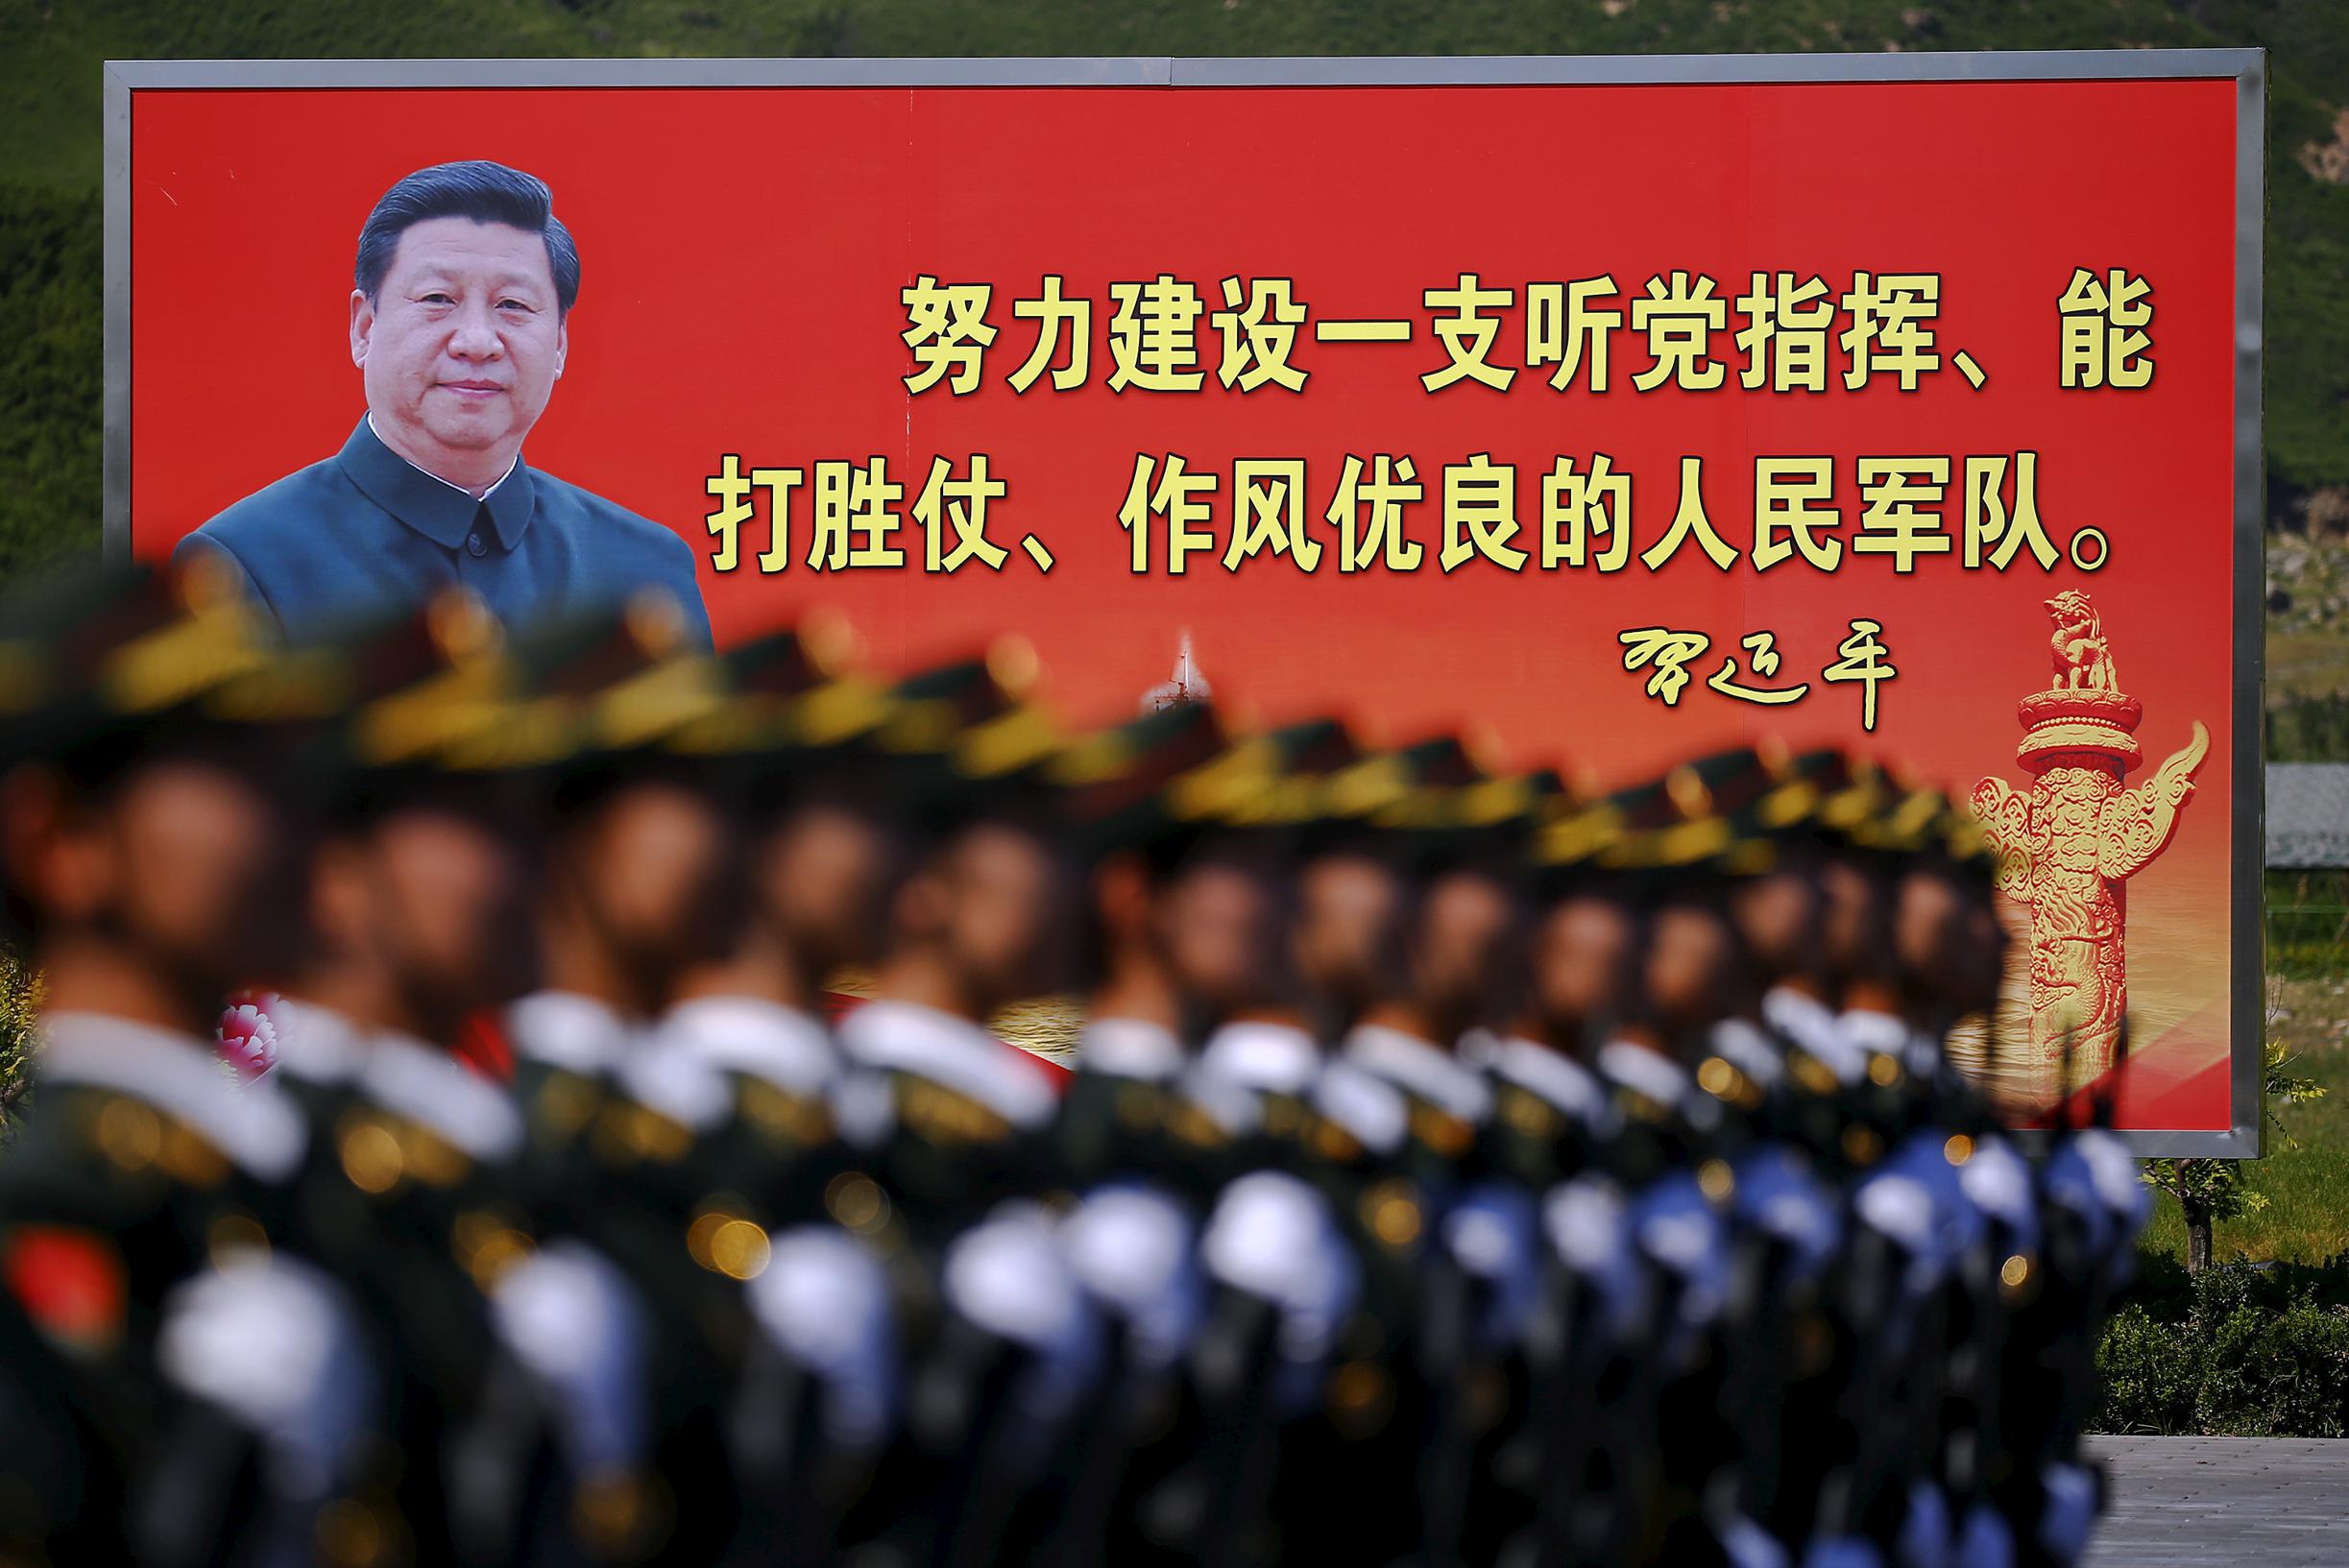 Xi Jinping ha detto che l’esercito cinese dovrebbe prepararsi alla guerra: “Concentra tutte le tue energie sul combattimento”.